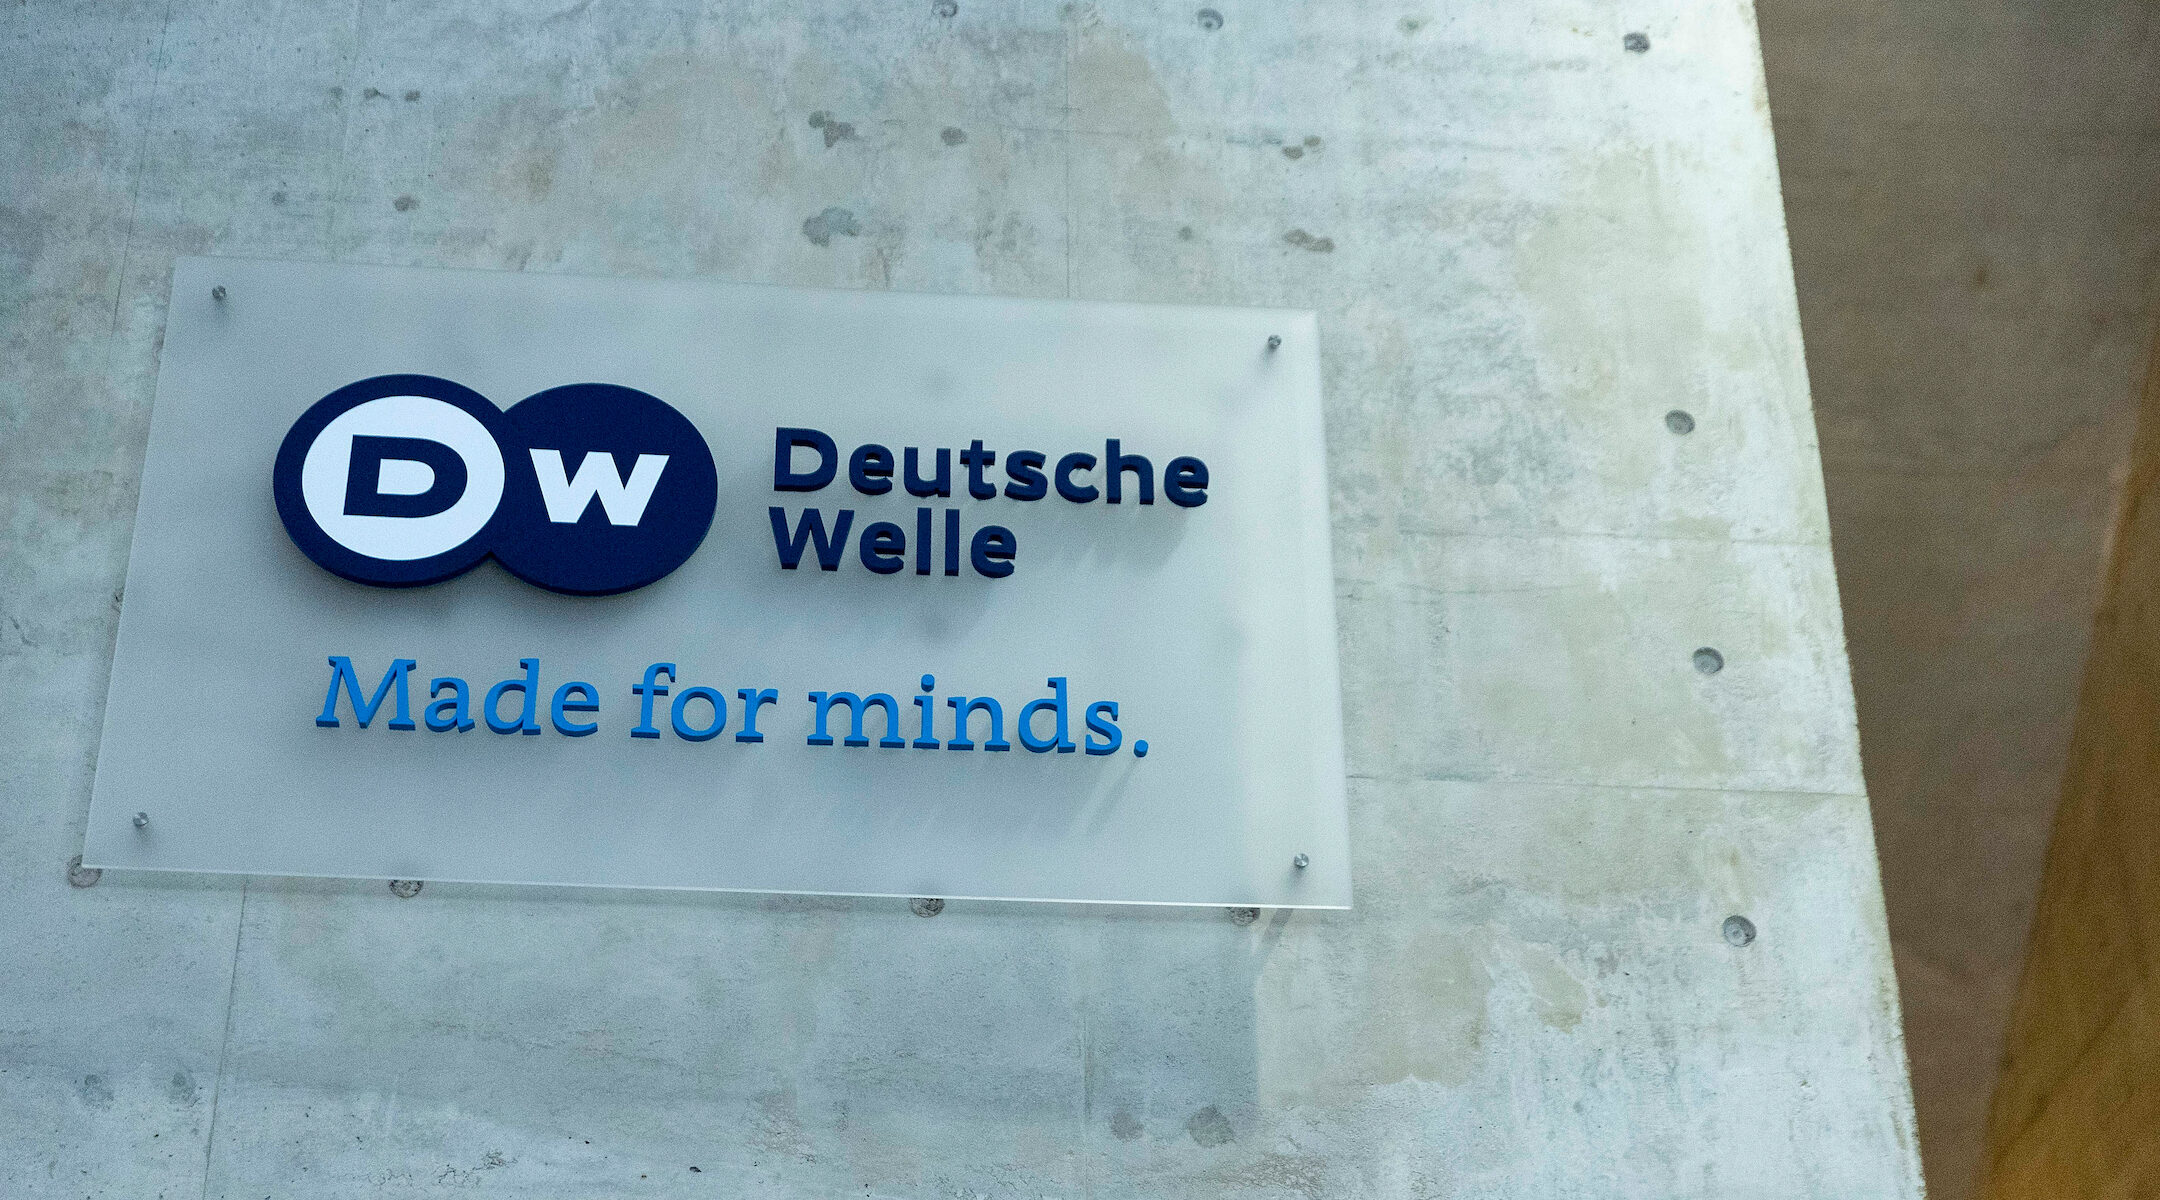 The Deutsche Welle logo